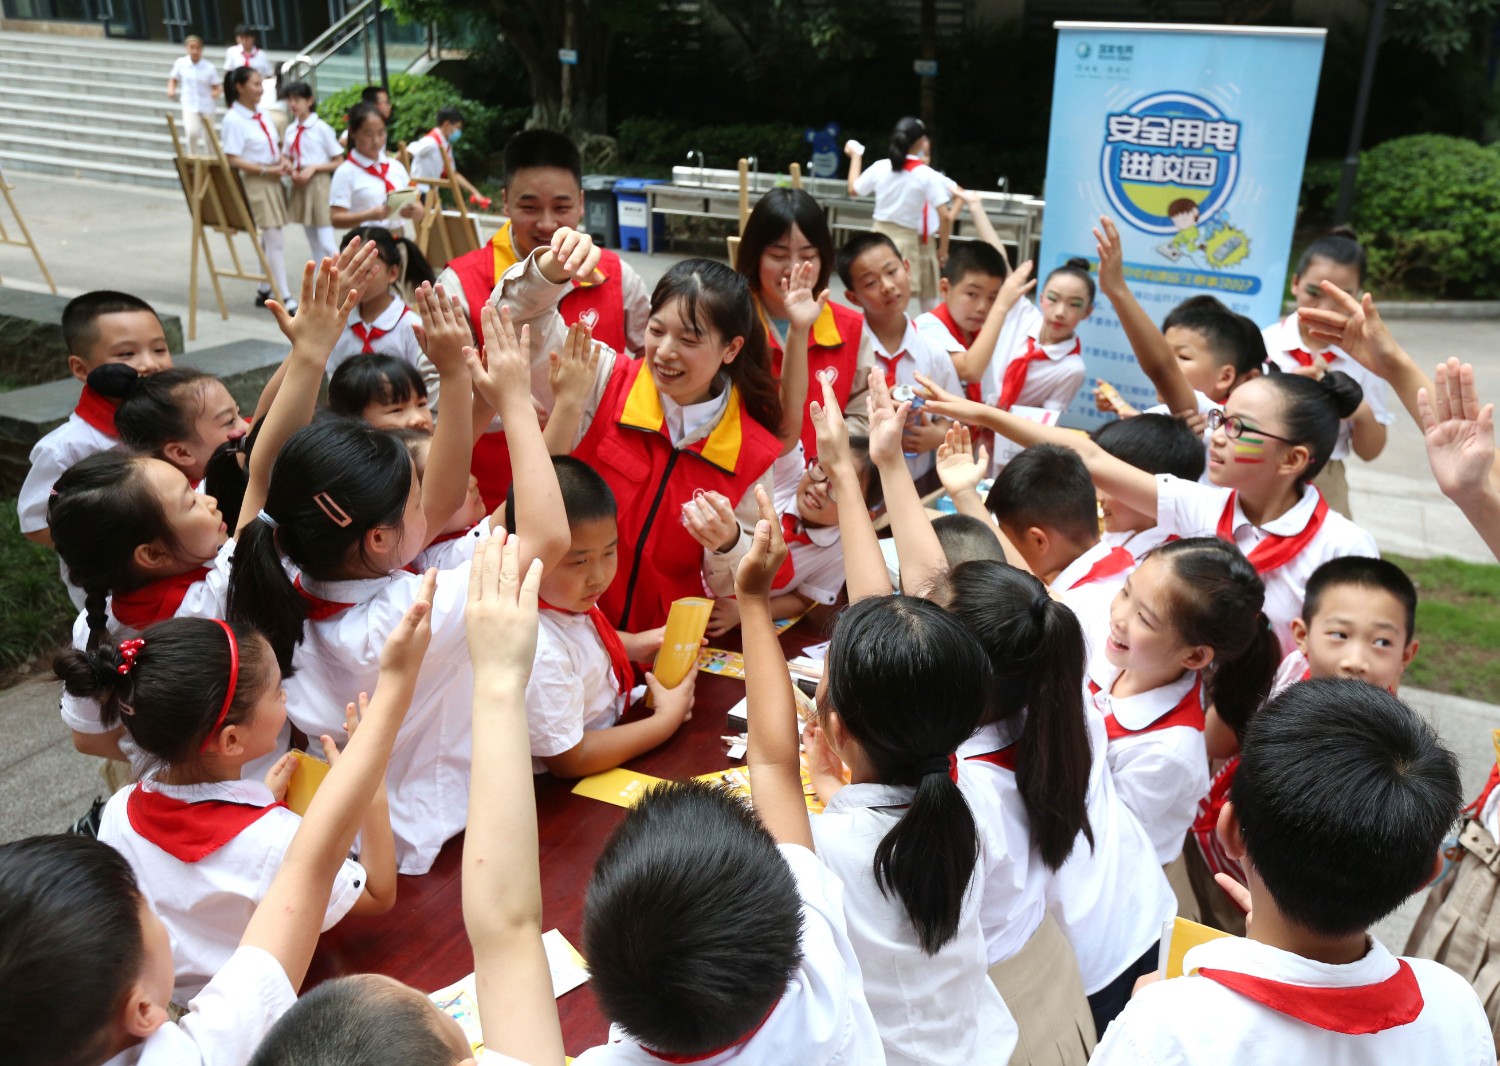 国网重庆市北供电公司青年志愿者宣讲团走进两江新区金山小学为孩子们讲解安全用电知识。2（向江微）.jpg